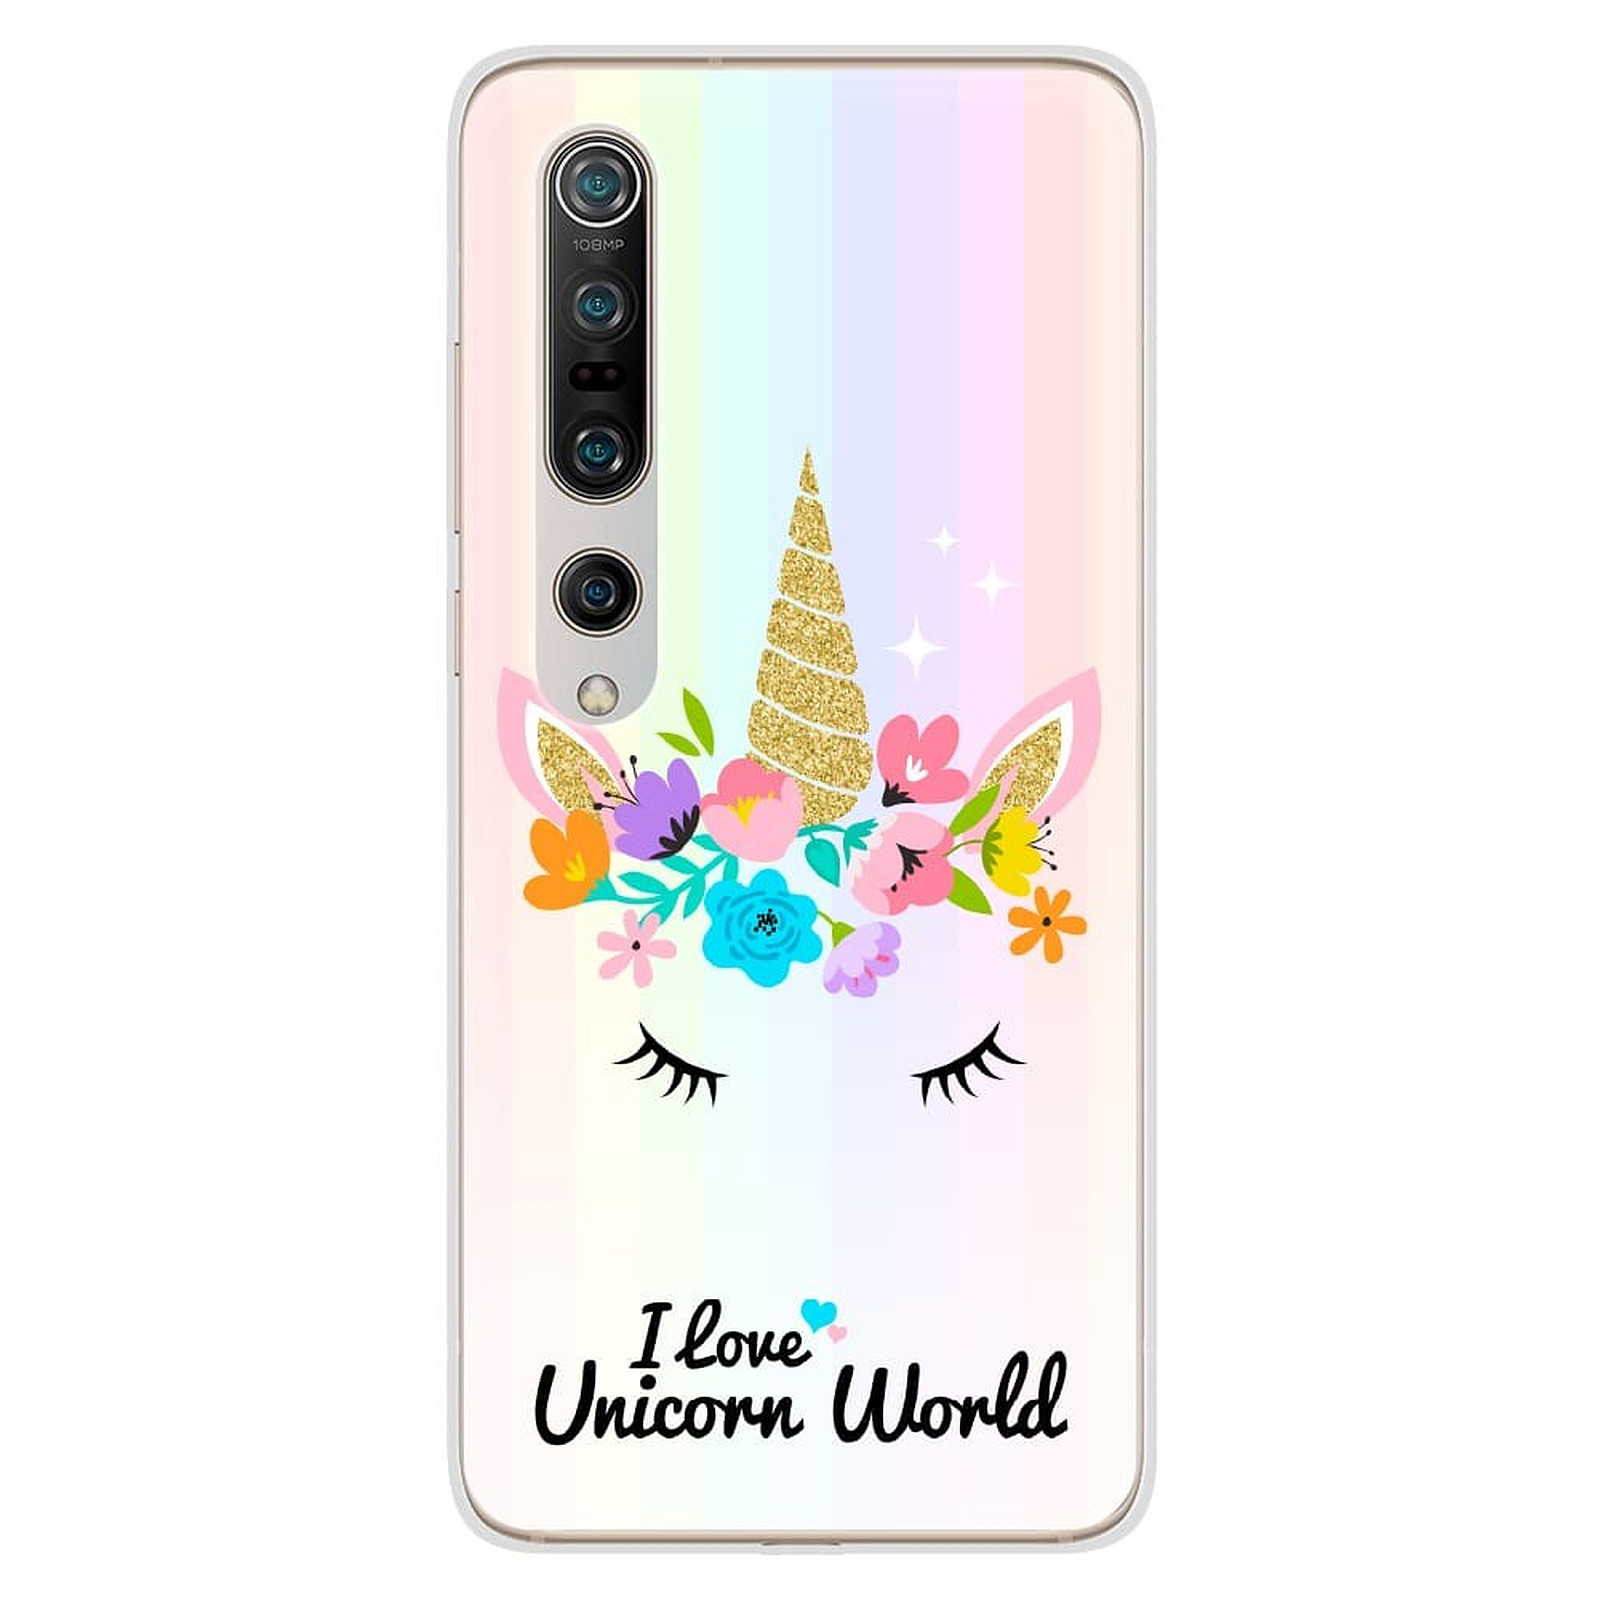 1001 Coques Coque silicone gel Xiaomi Mi 10 / Mi 10 Pro motif Unicorn World - Coque telephone 1001Coques